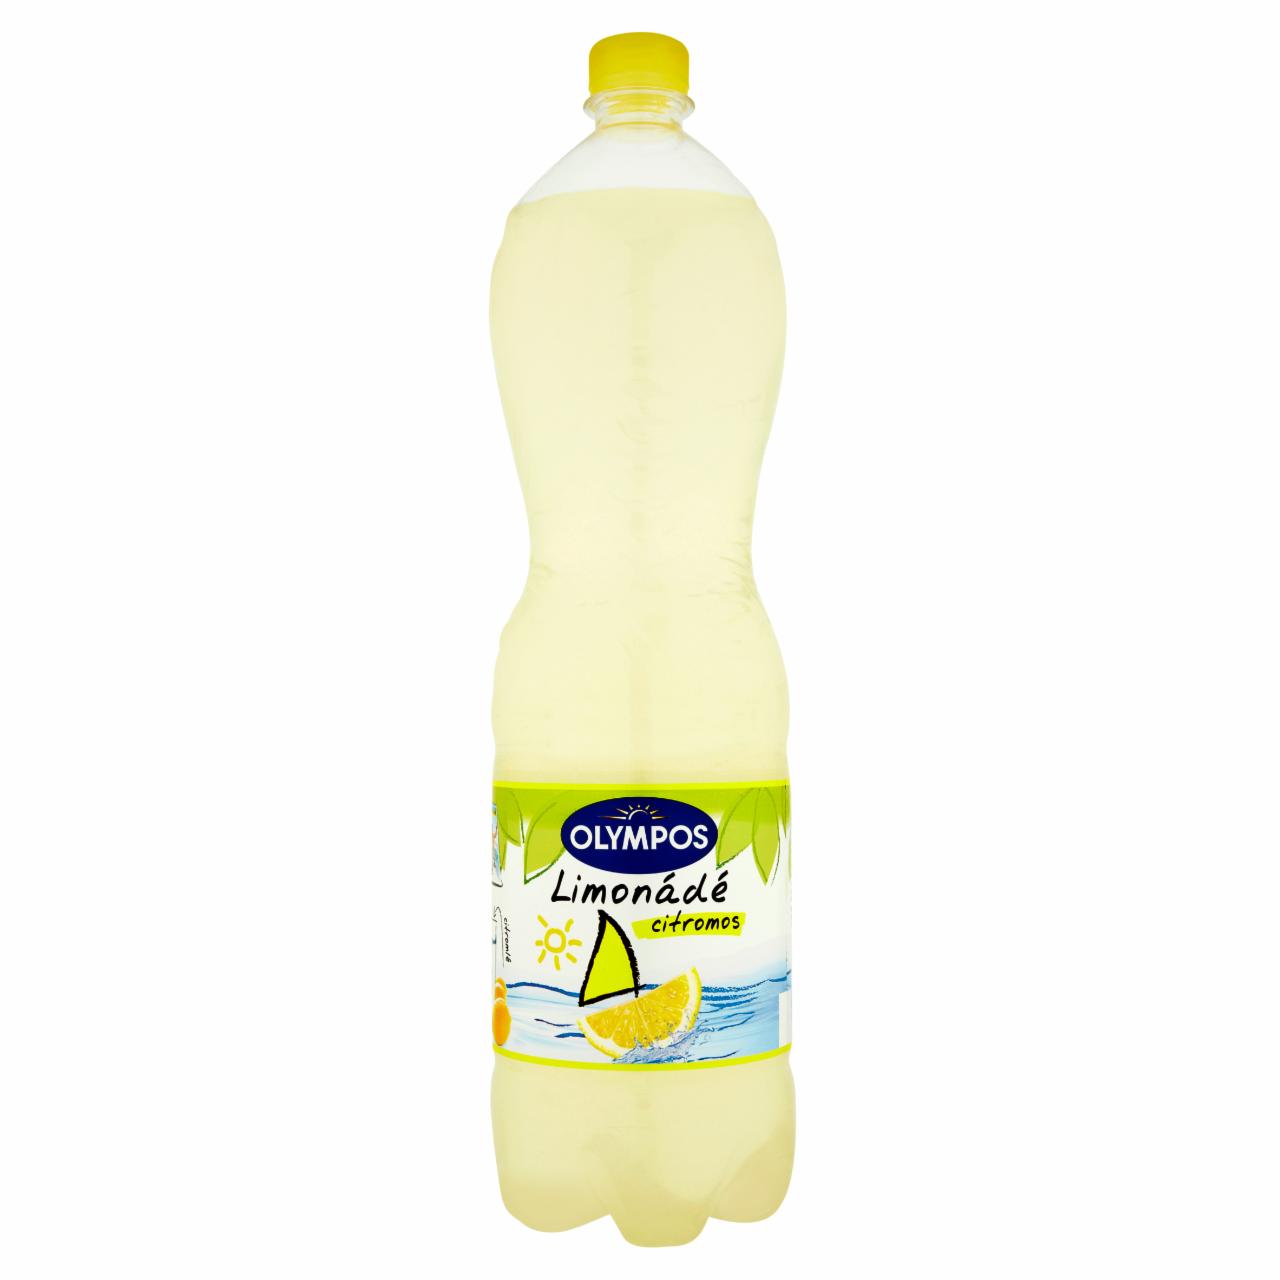 Képek - Olympos Limonádé citromos üdítőital 1,5 l